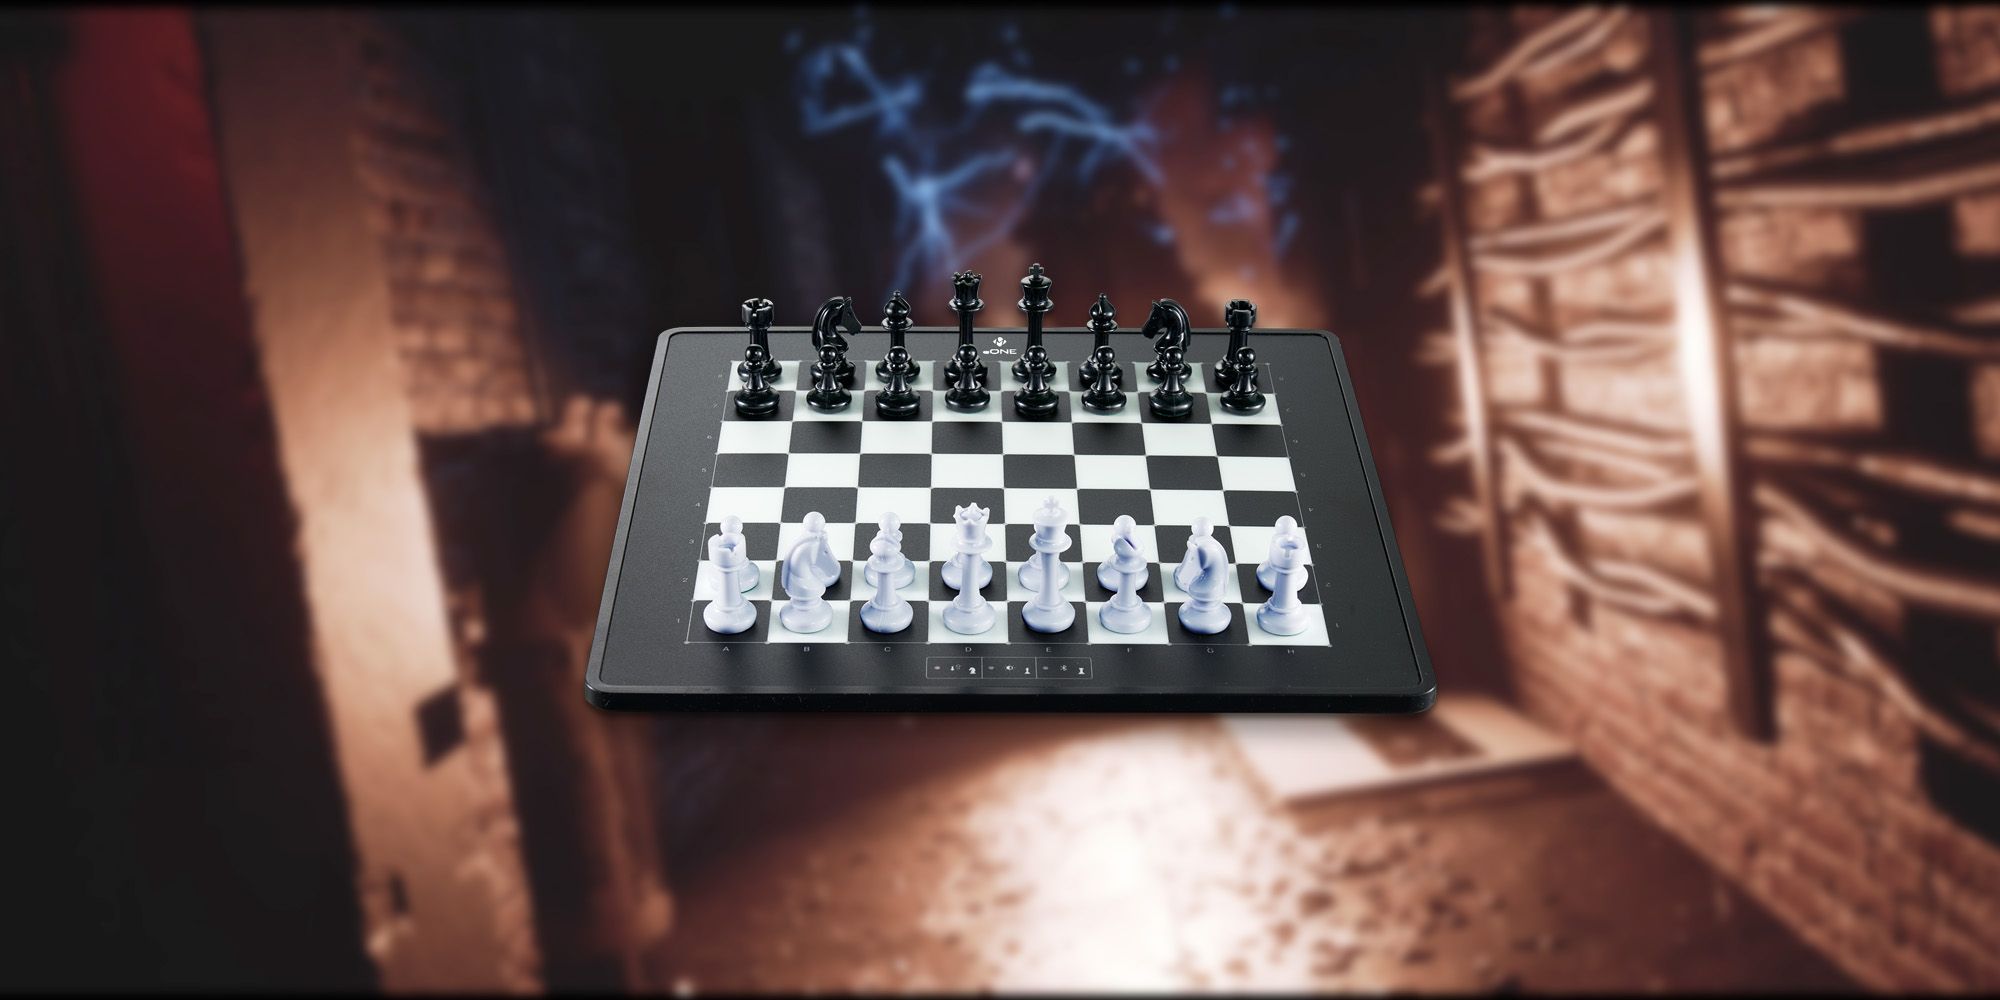 Fobia - St. Dinfna Hotel: Cómo resolver el rompecabezas de ajedrez